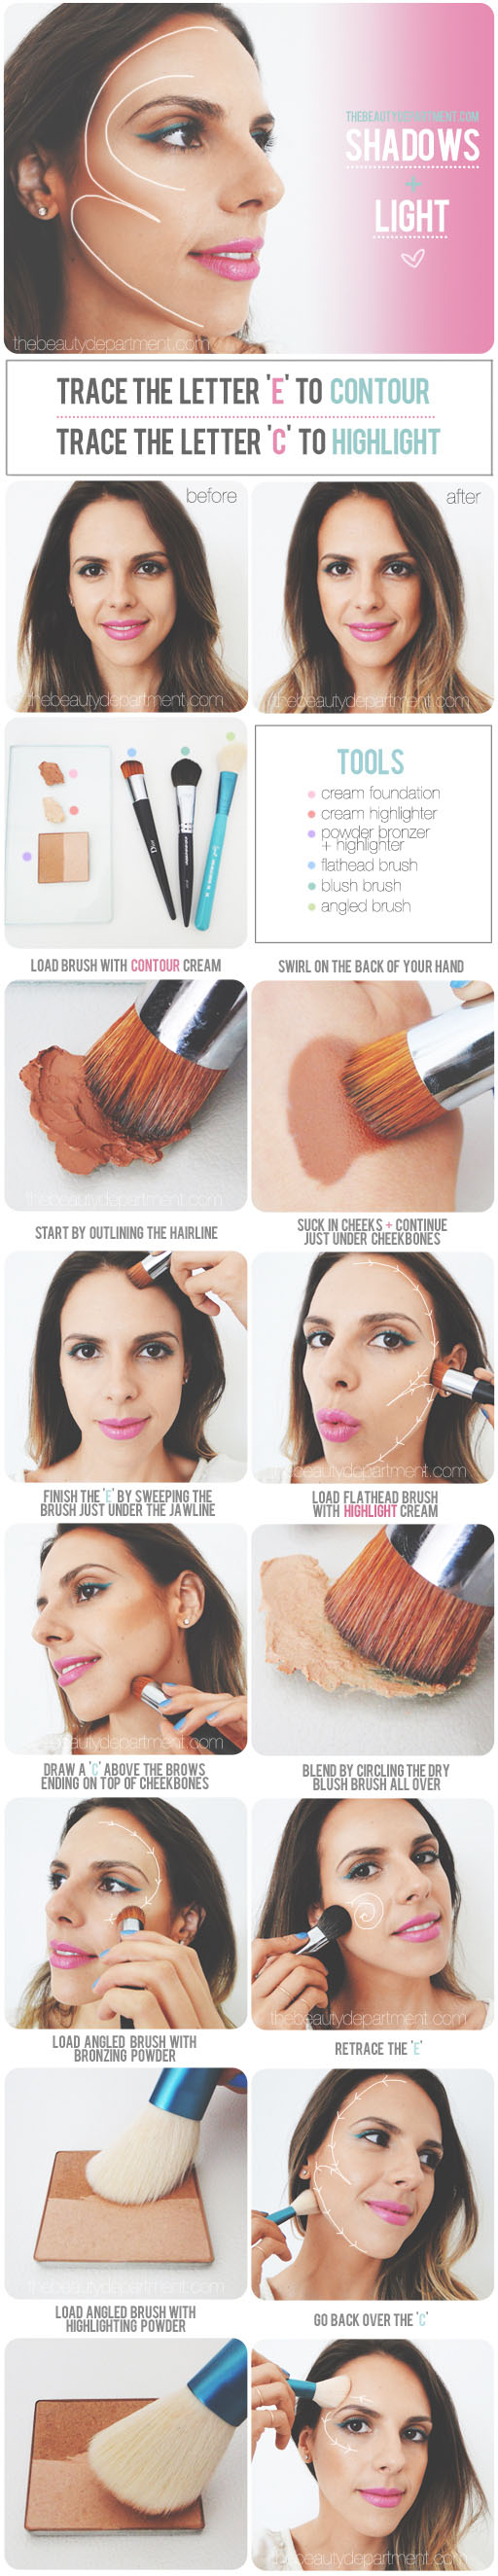 20 Helpful Makeup Tutorials